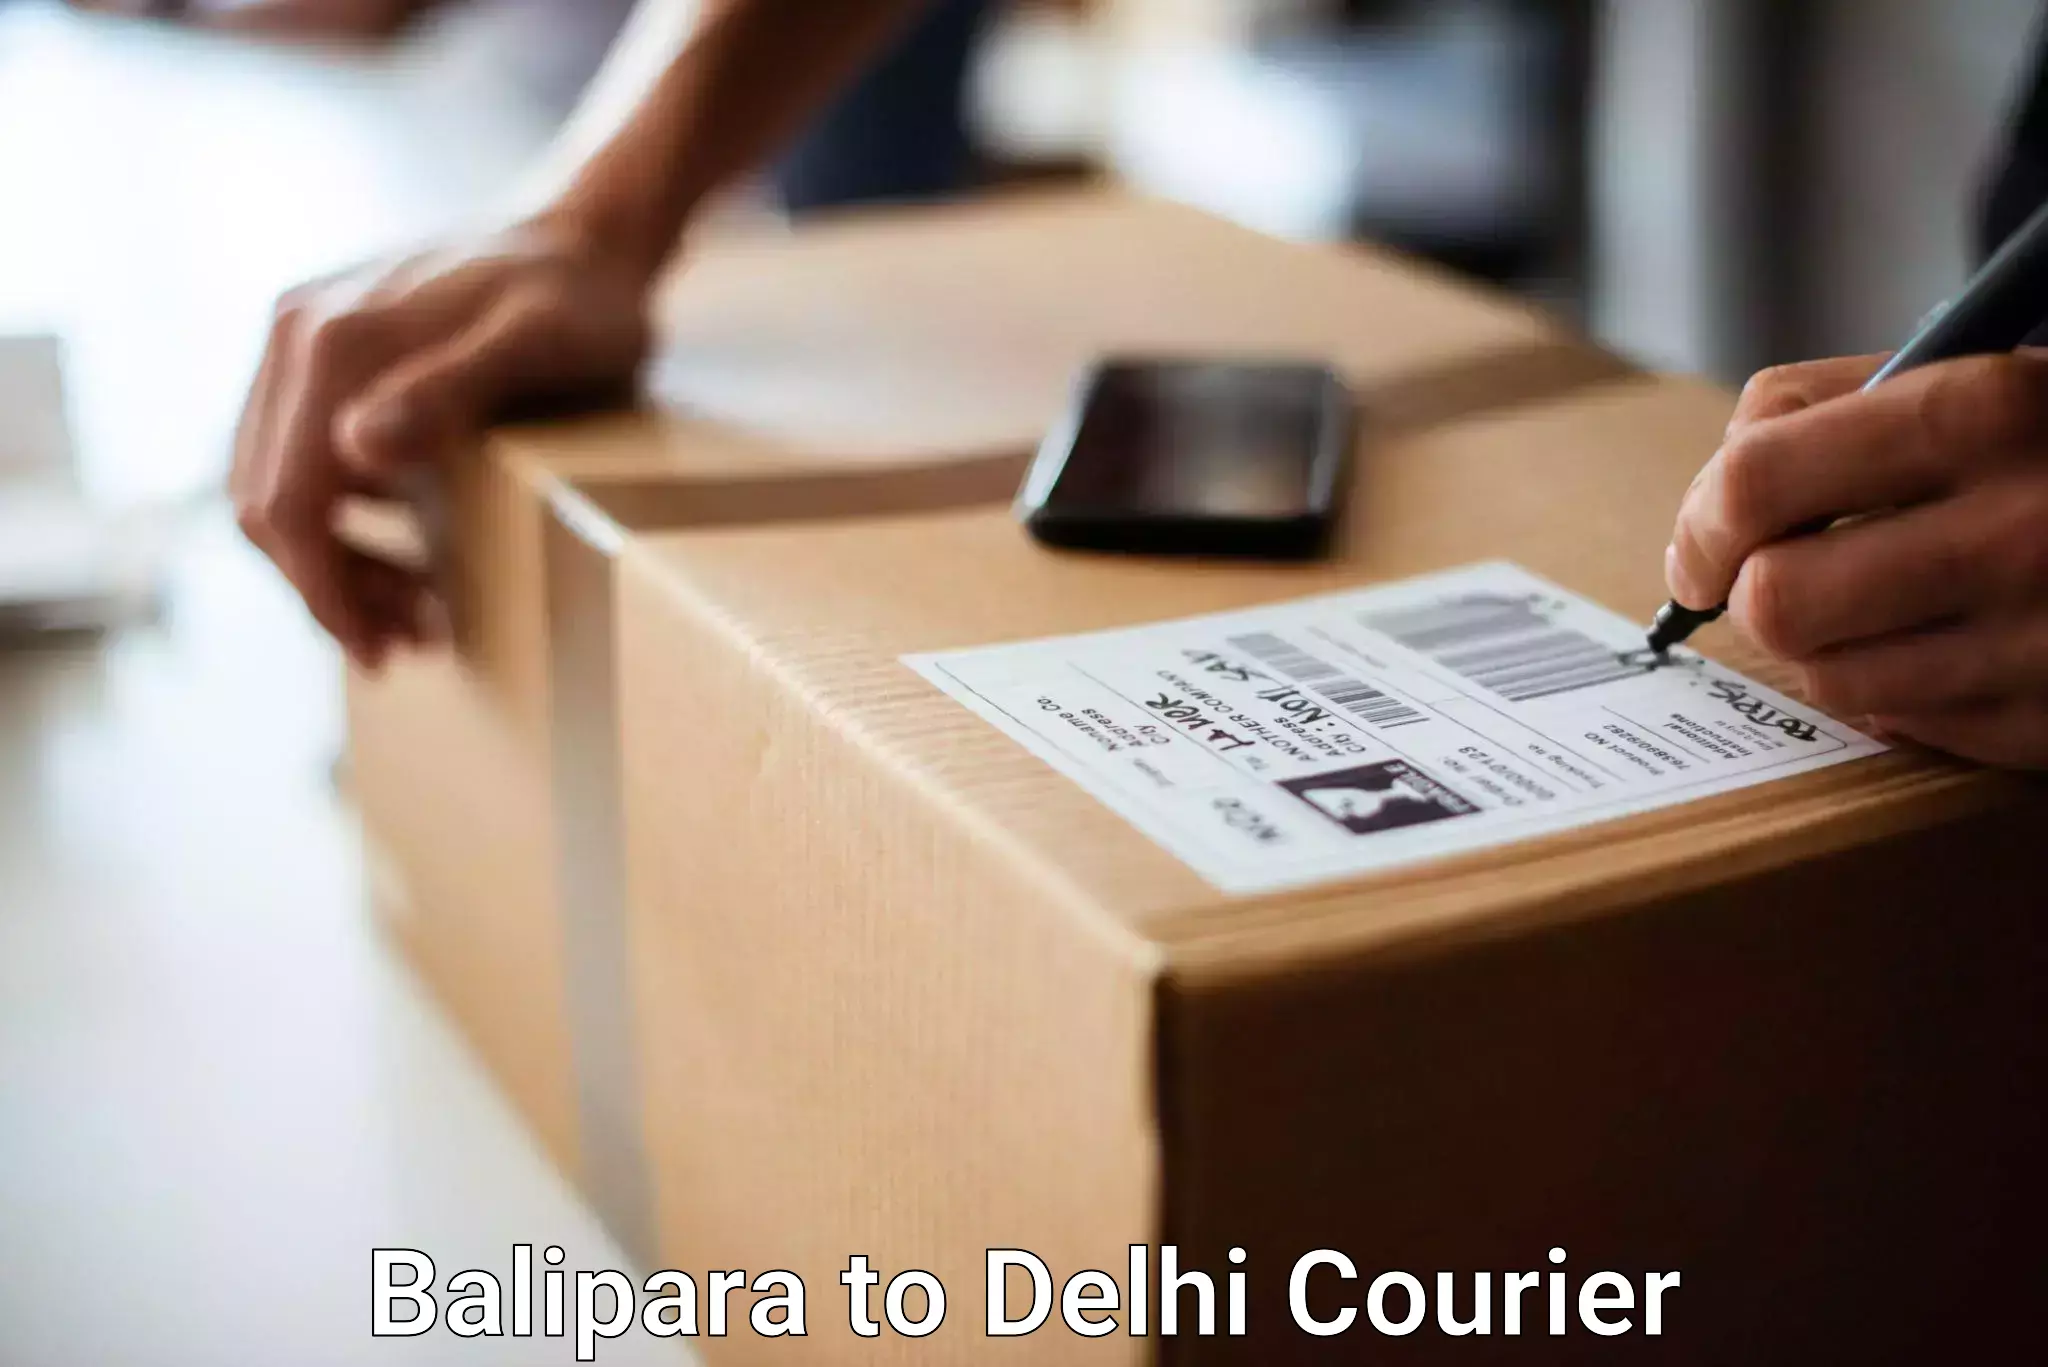 Baggage shipping service Balipara to IIT Delhi